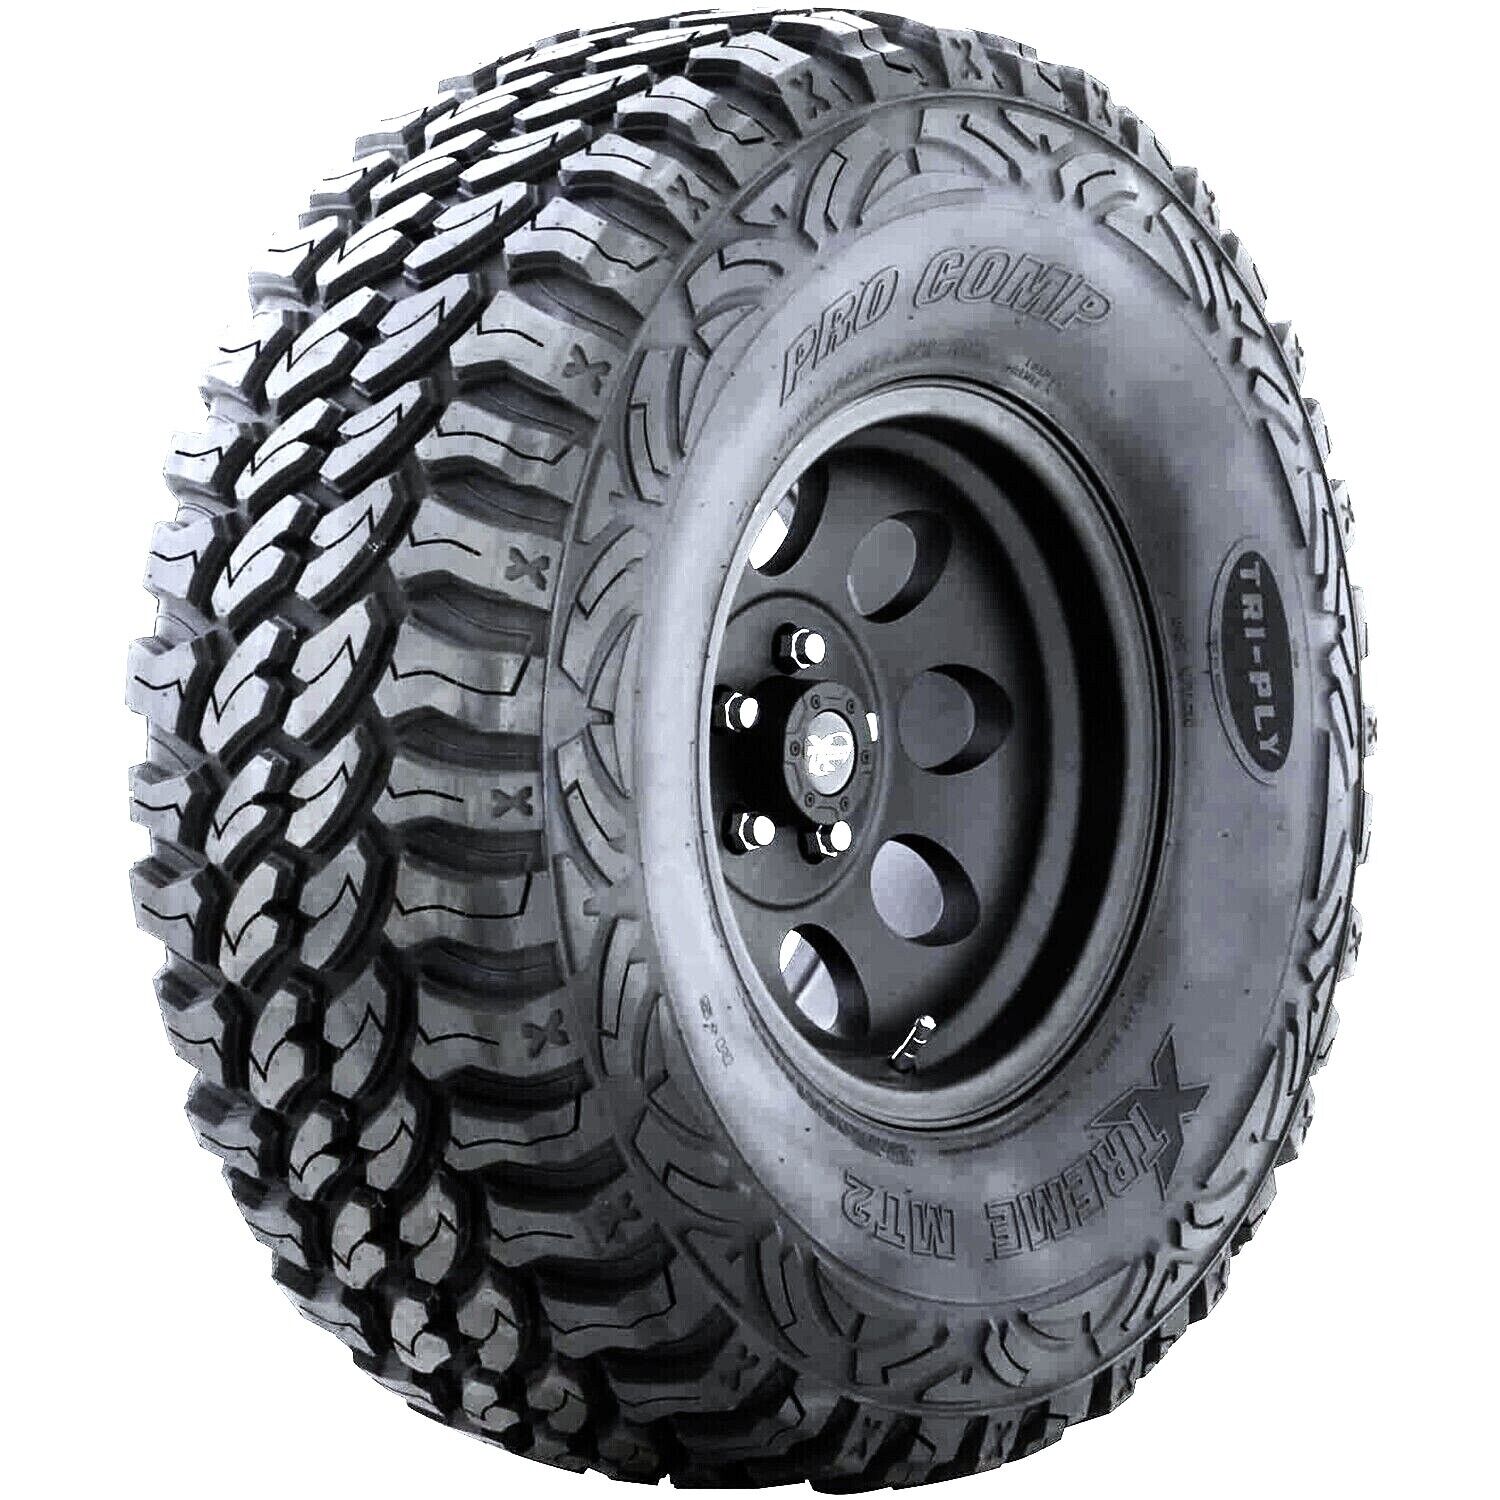 2 Tires Pro Comp Xtreme M/T2 LT 285/70R17 Load D 8 Ply MT M/T Mud